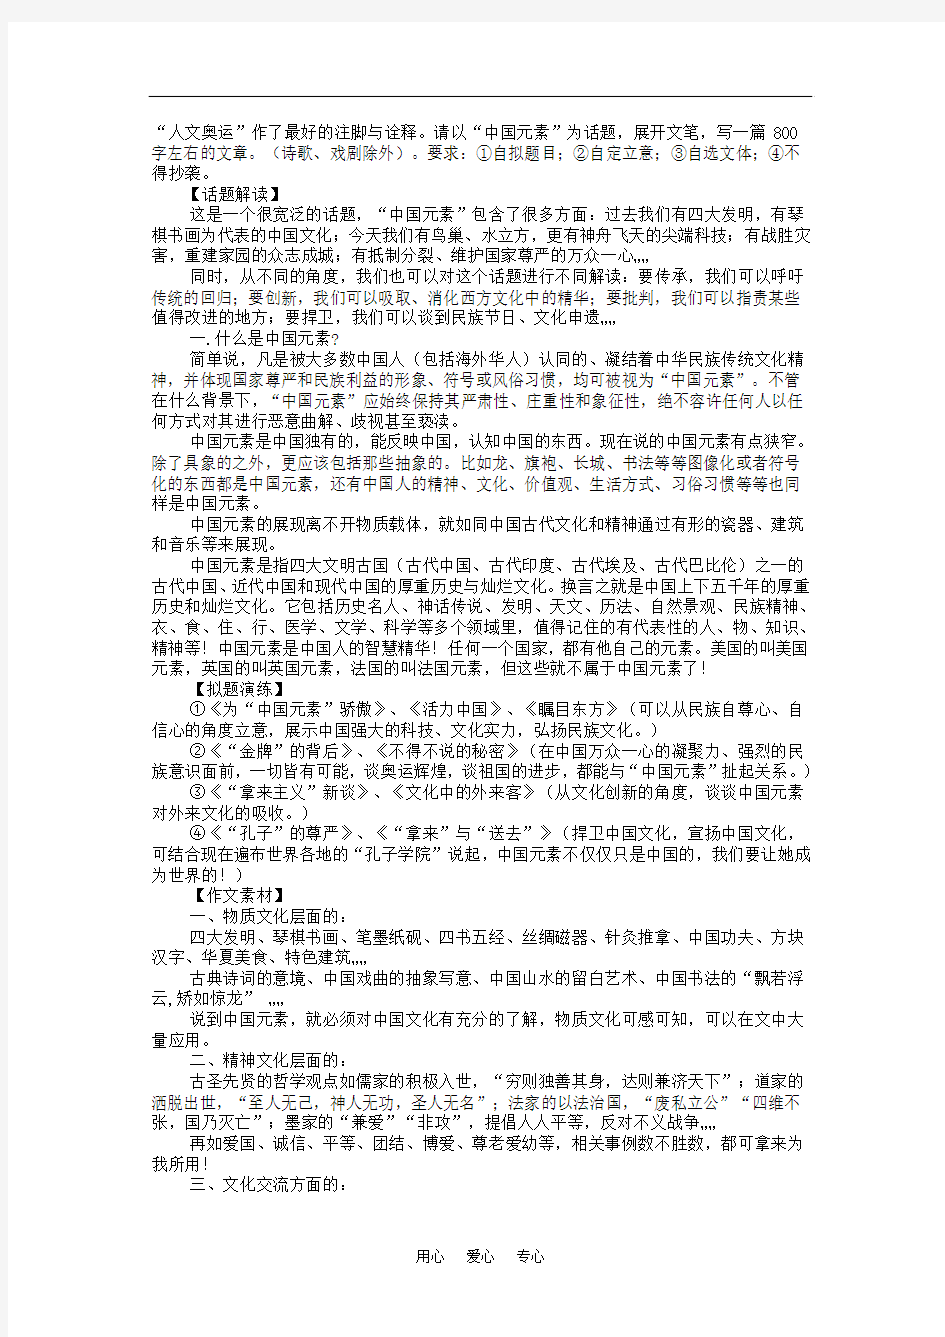 高三语文高考冲刺作文热点素材大全及写作指导高考作文素材---中国元素